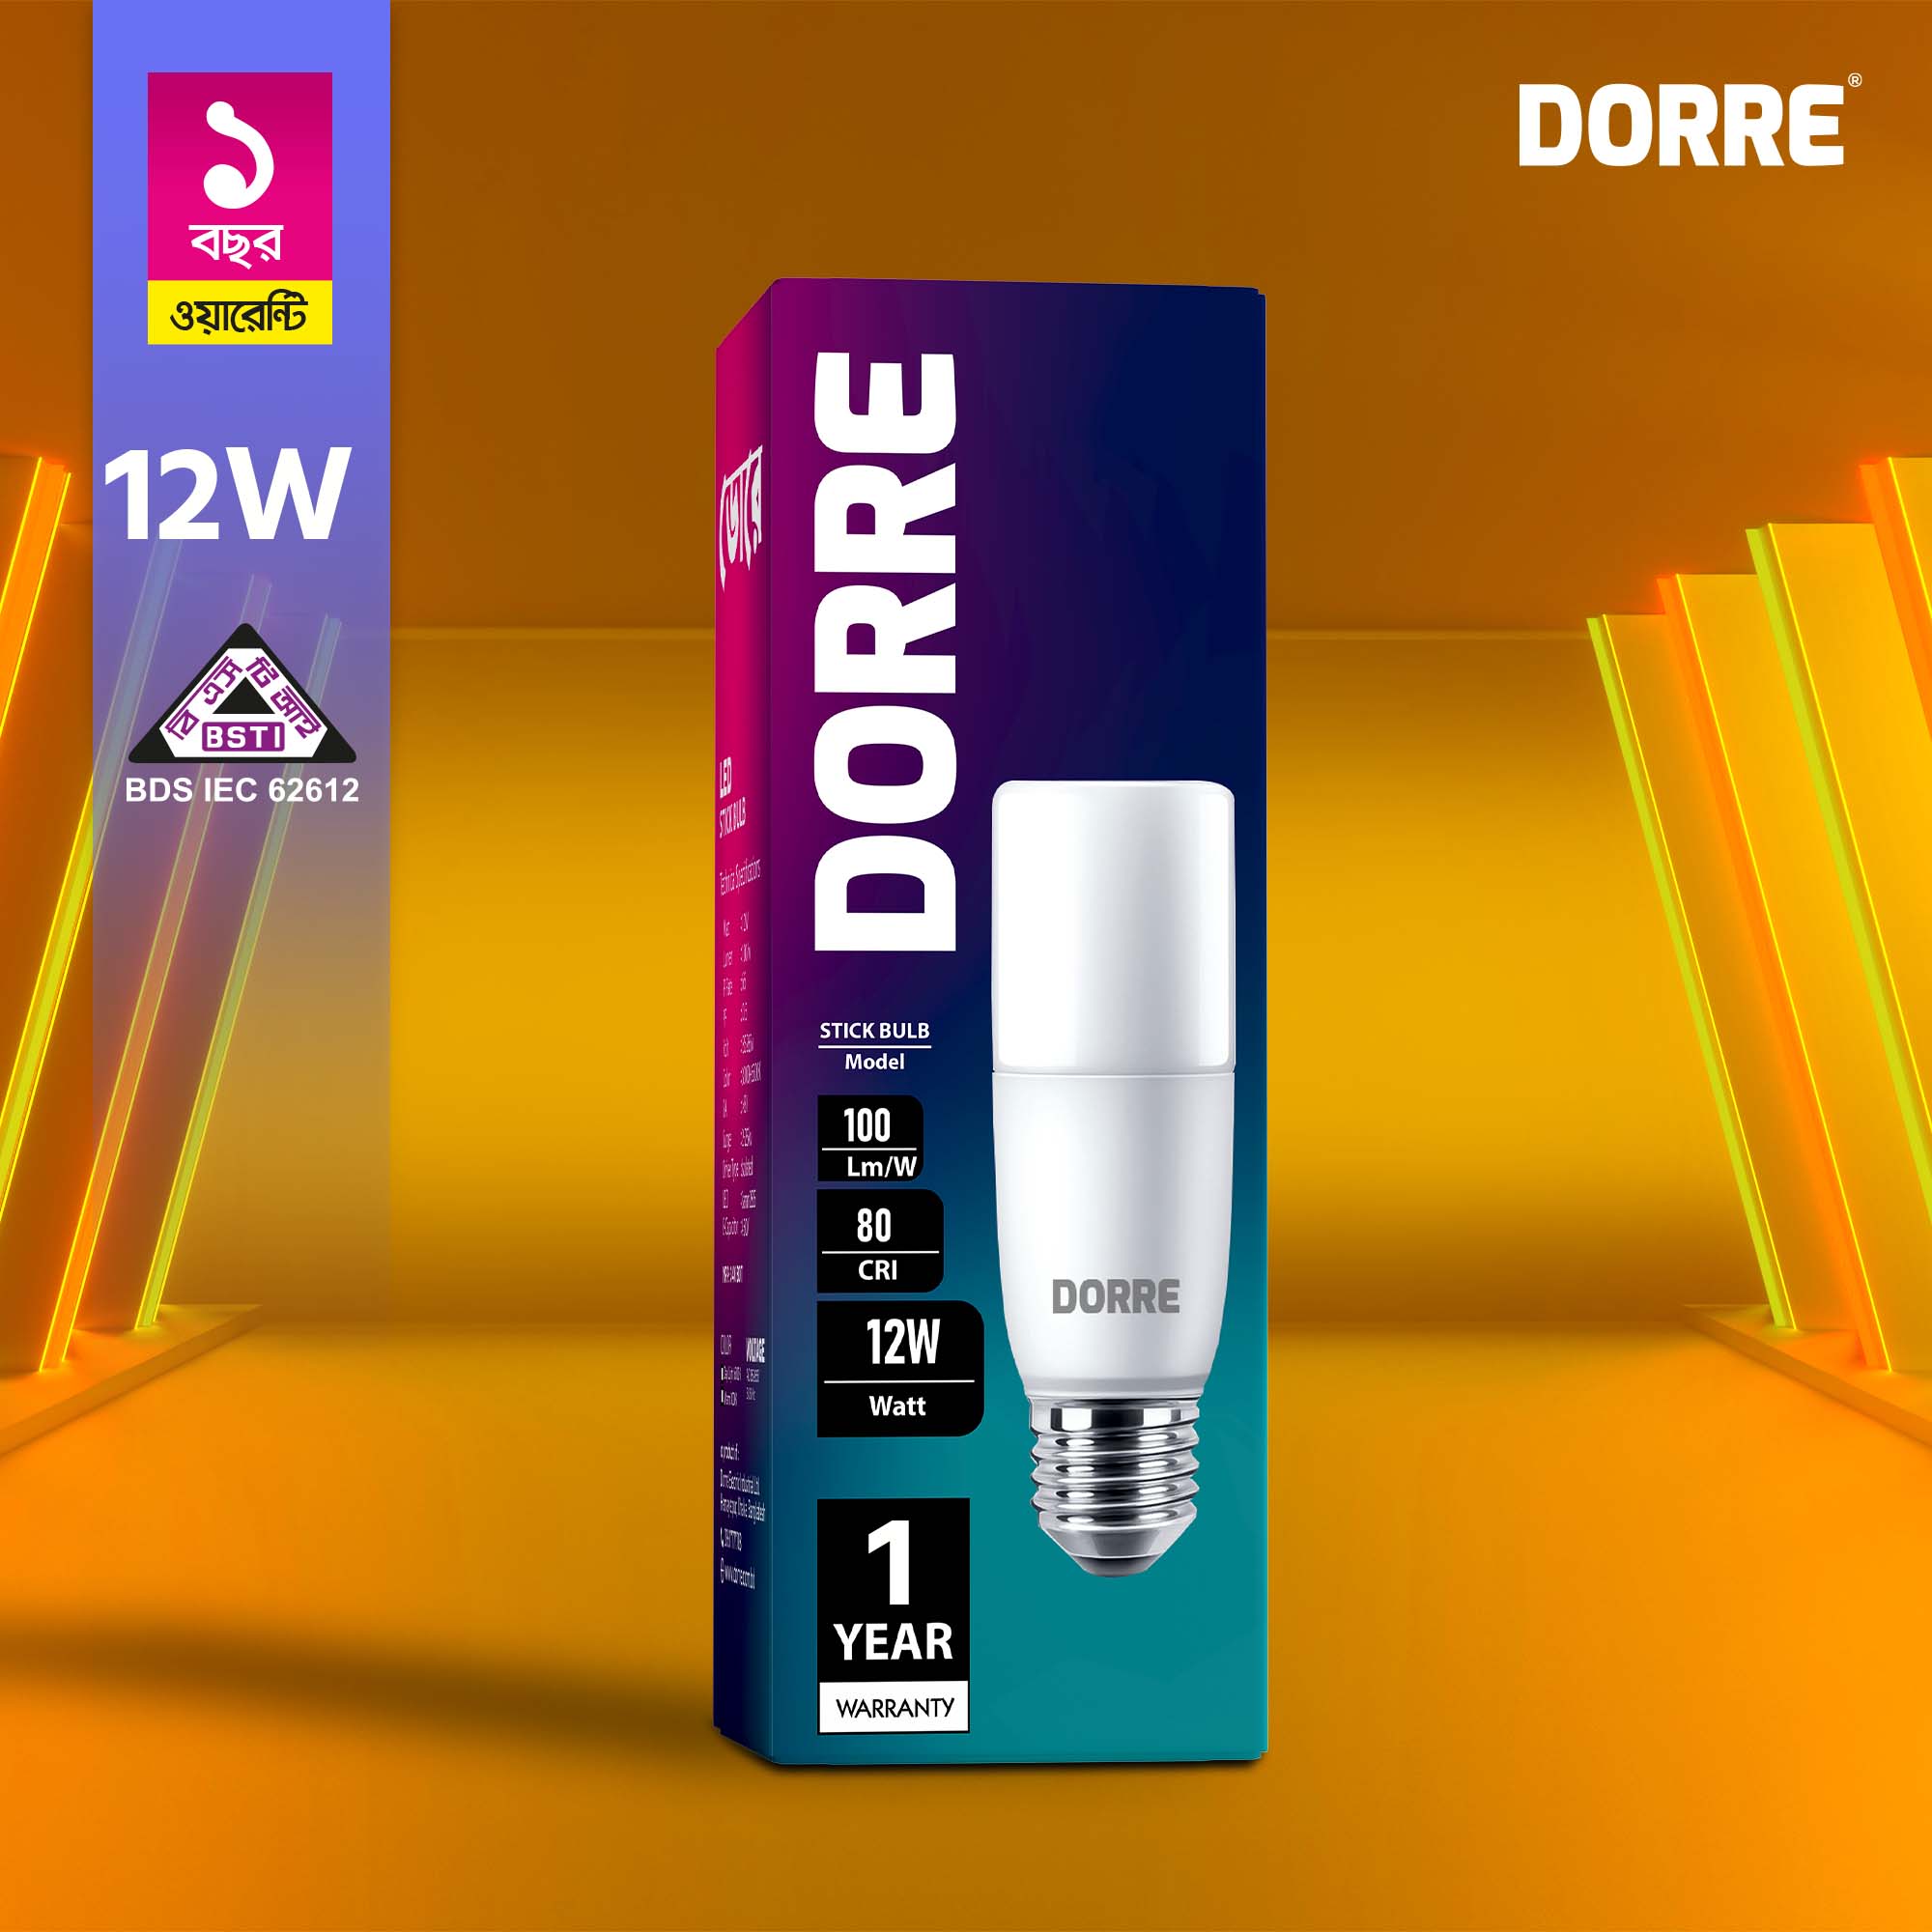 Dorre-Stick-Bulb-Price